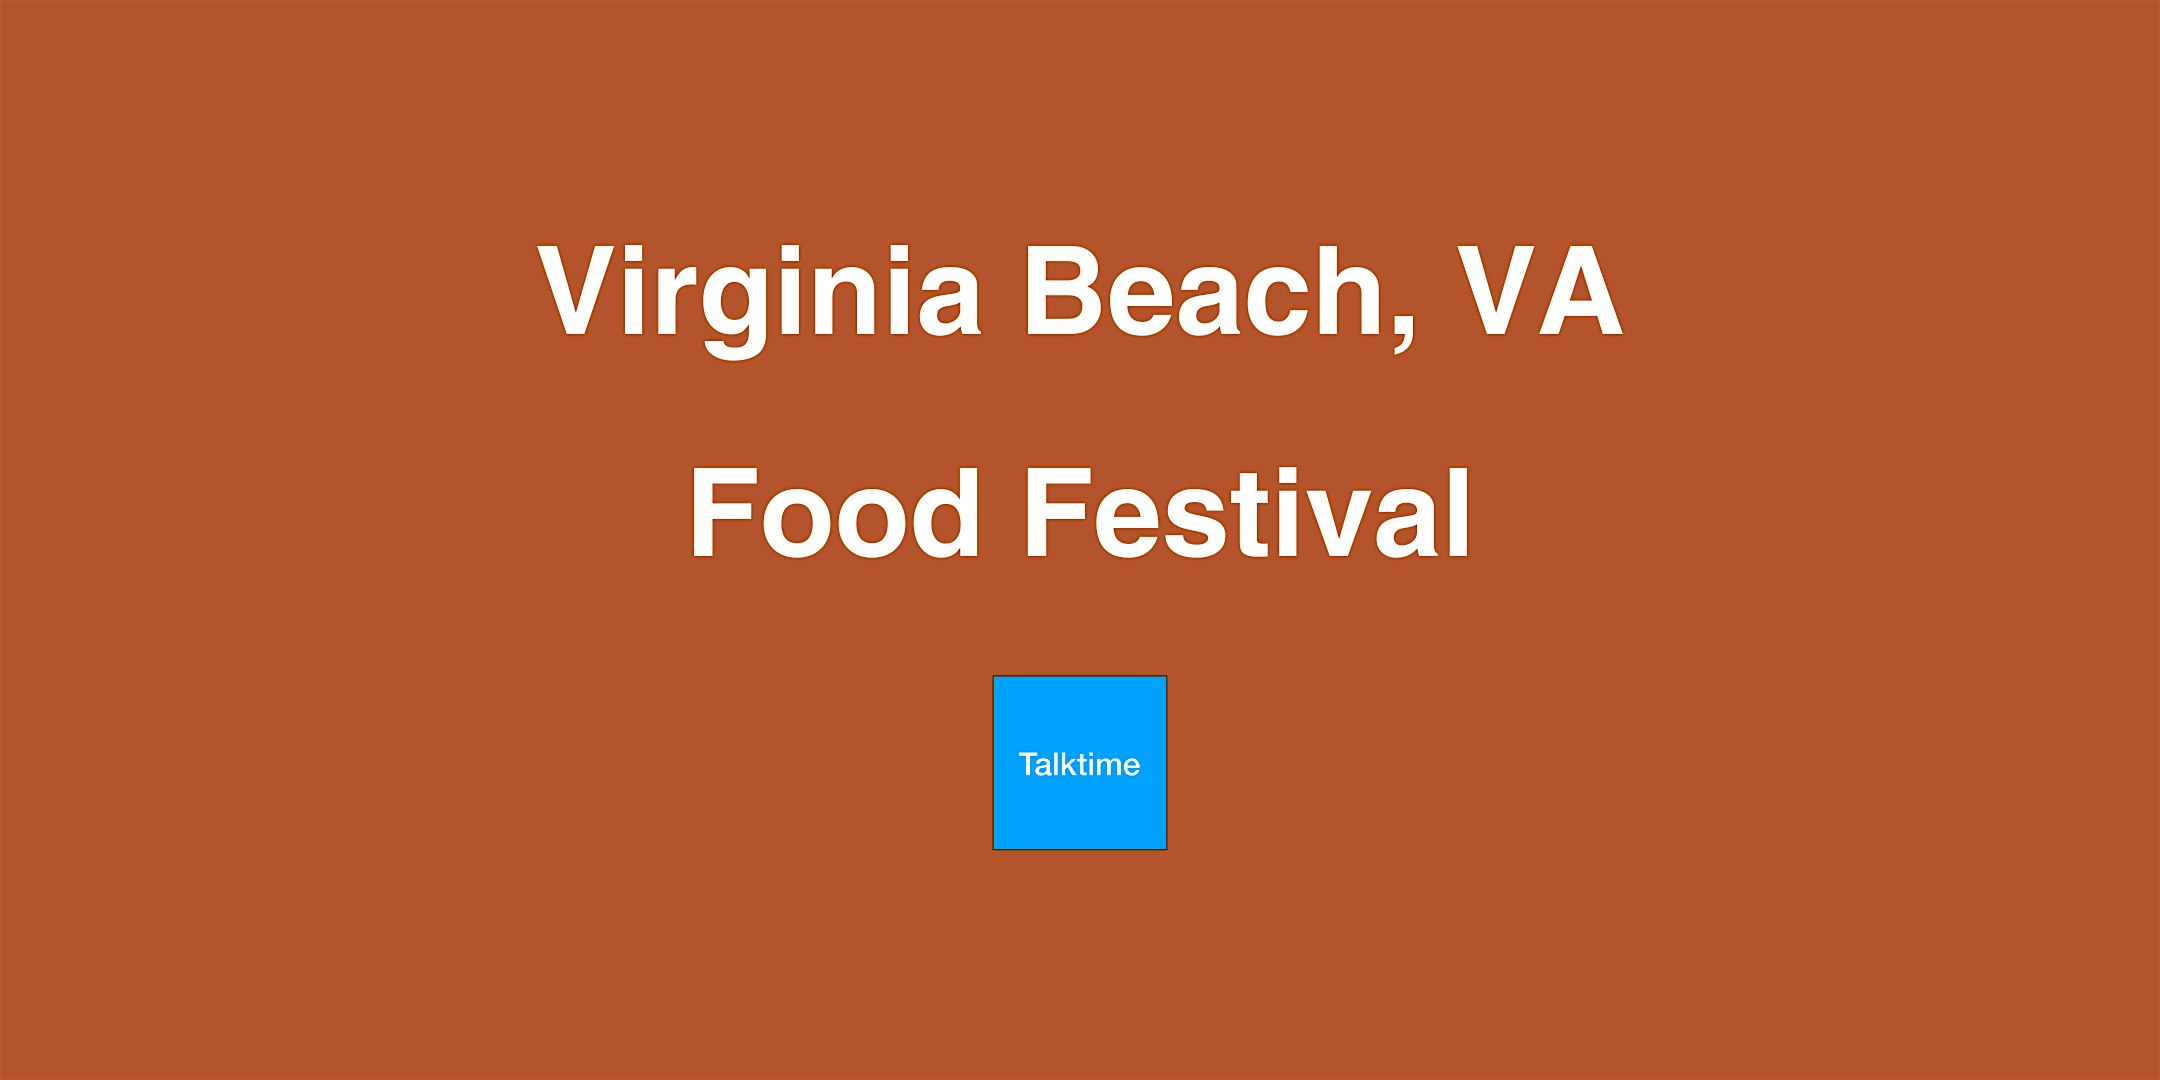 Food Festival - Virginia Beach